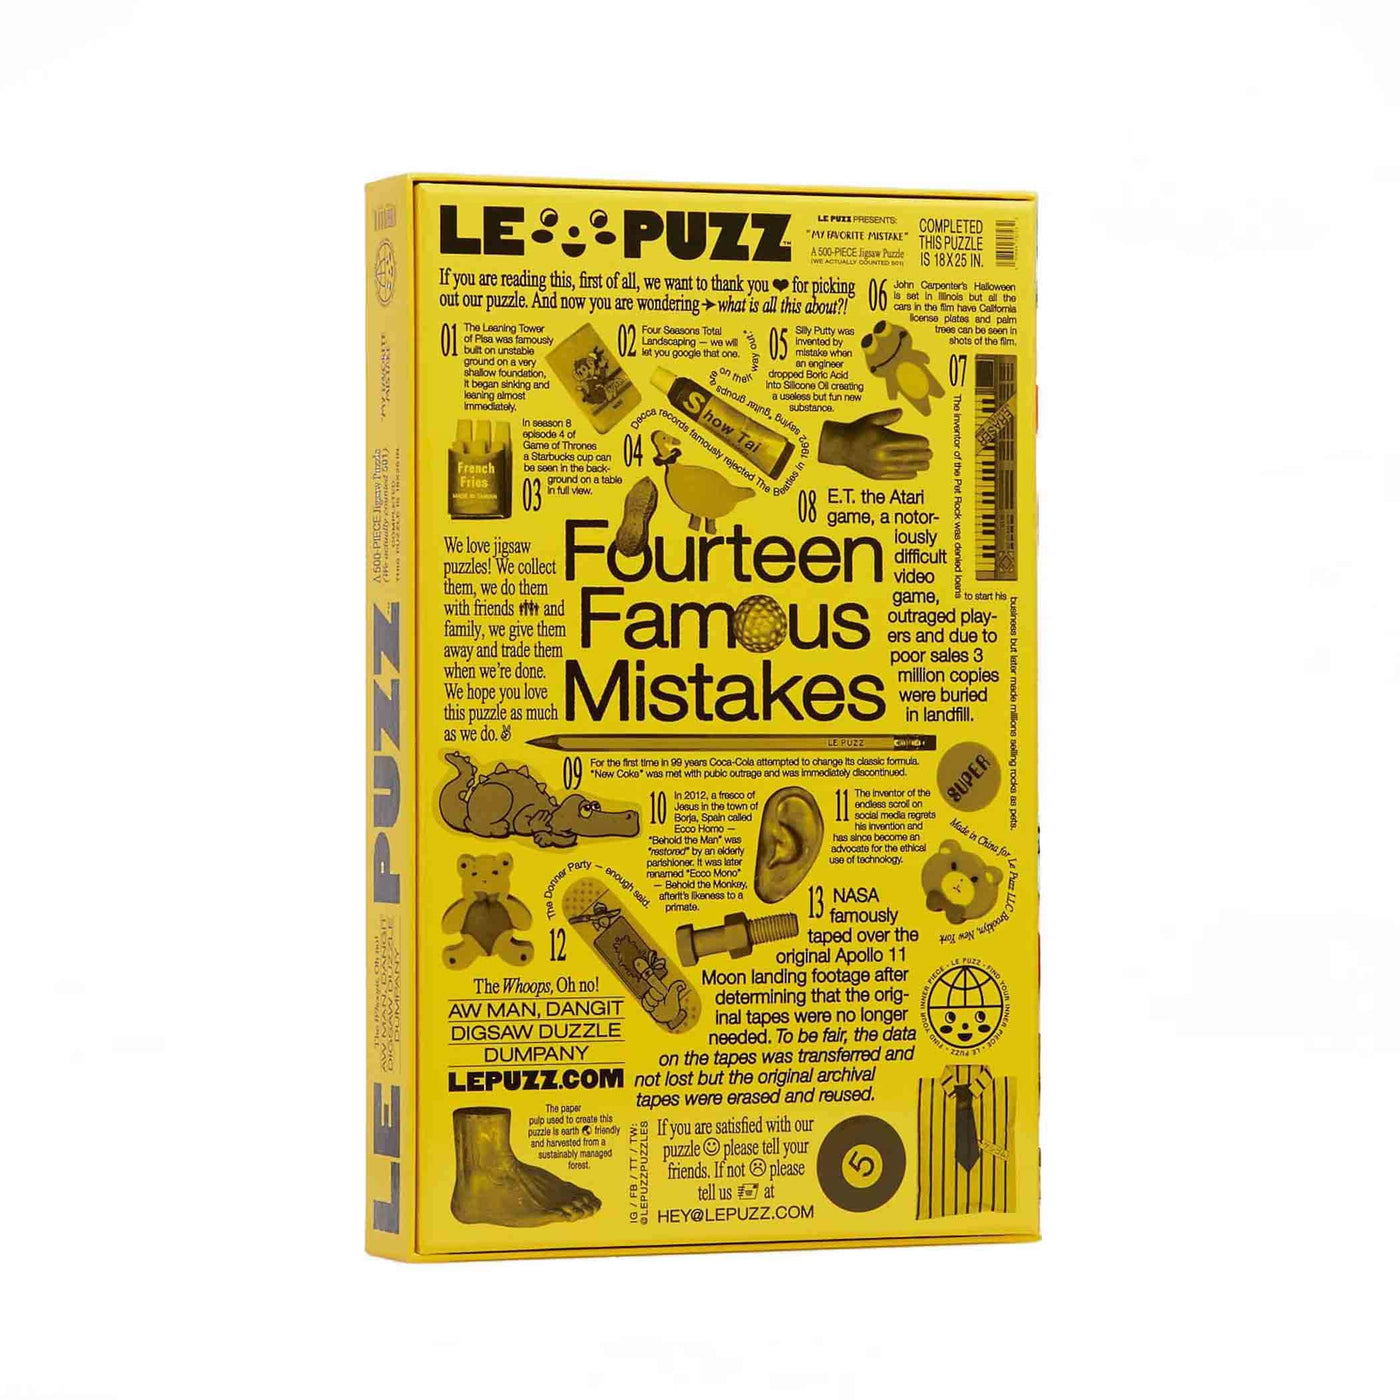 Explorez la collection de gommes à effacer avec le casse-tête My Favorite Mistake de Le Puzz. Un défi de 500 pièces rappelant que chaque erreur est une opportunité d'apprendre et de grandir.